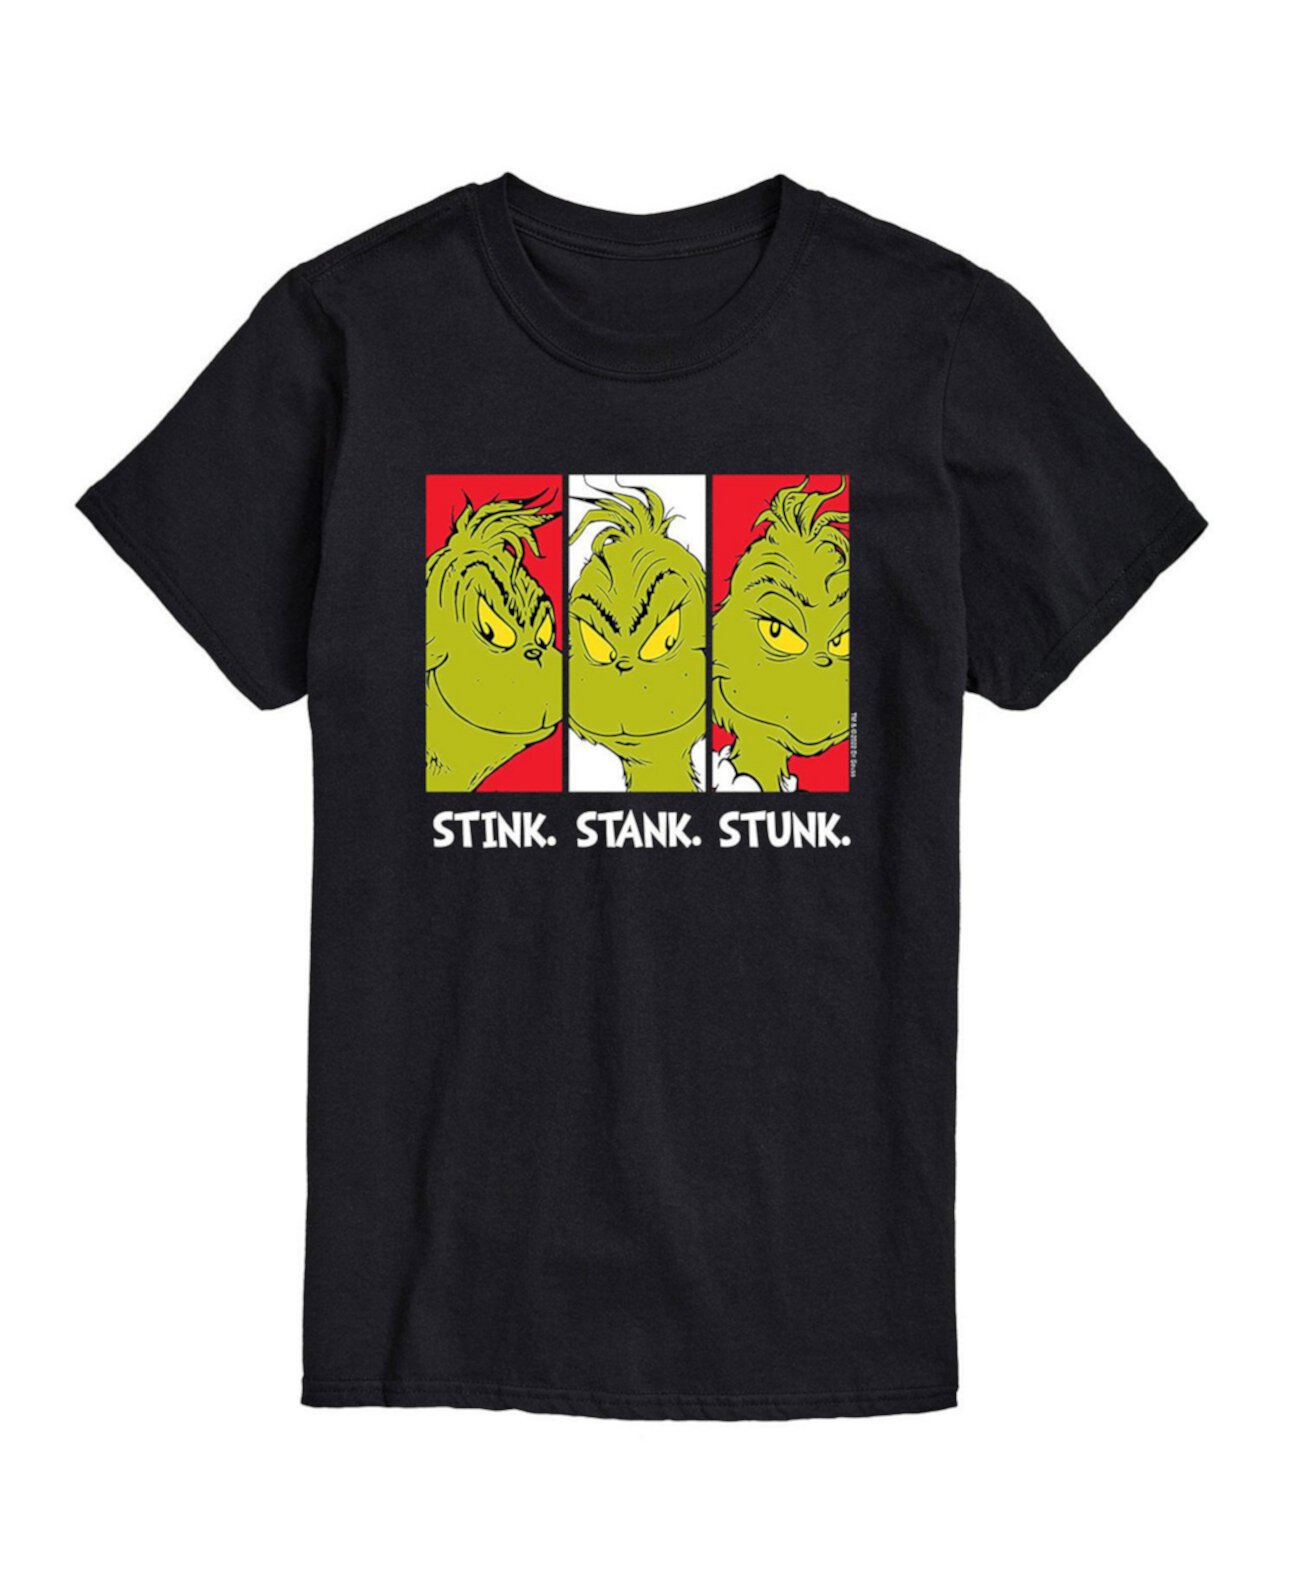 Мужская футболка с рисунком Dr. Seuss The Grinch Stink Stank Stunk AIRWAVES